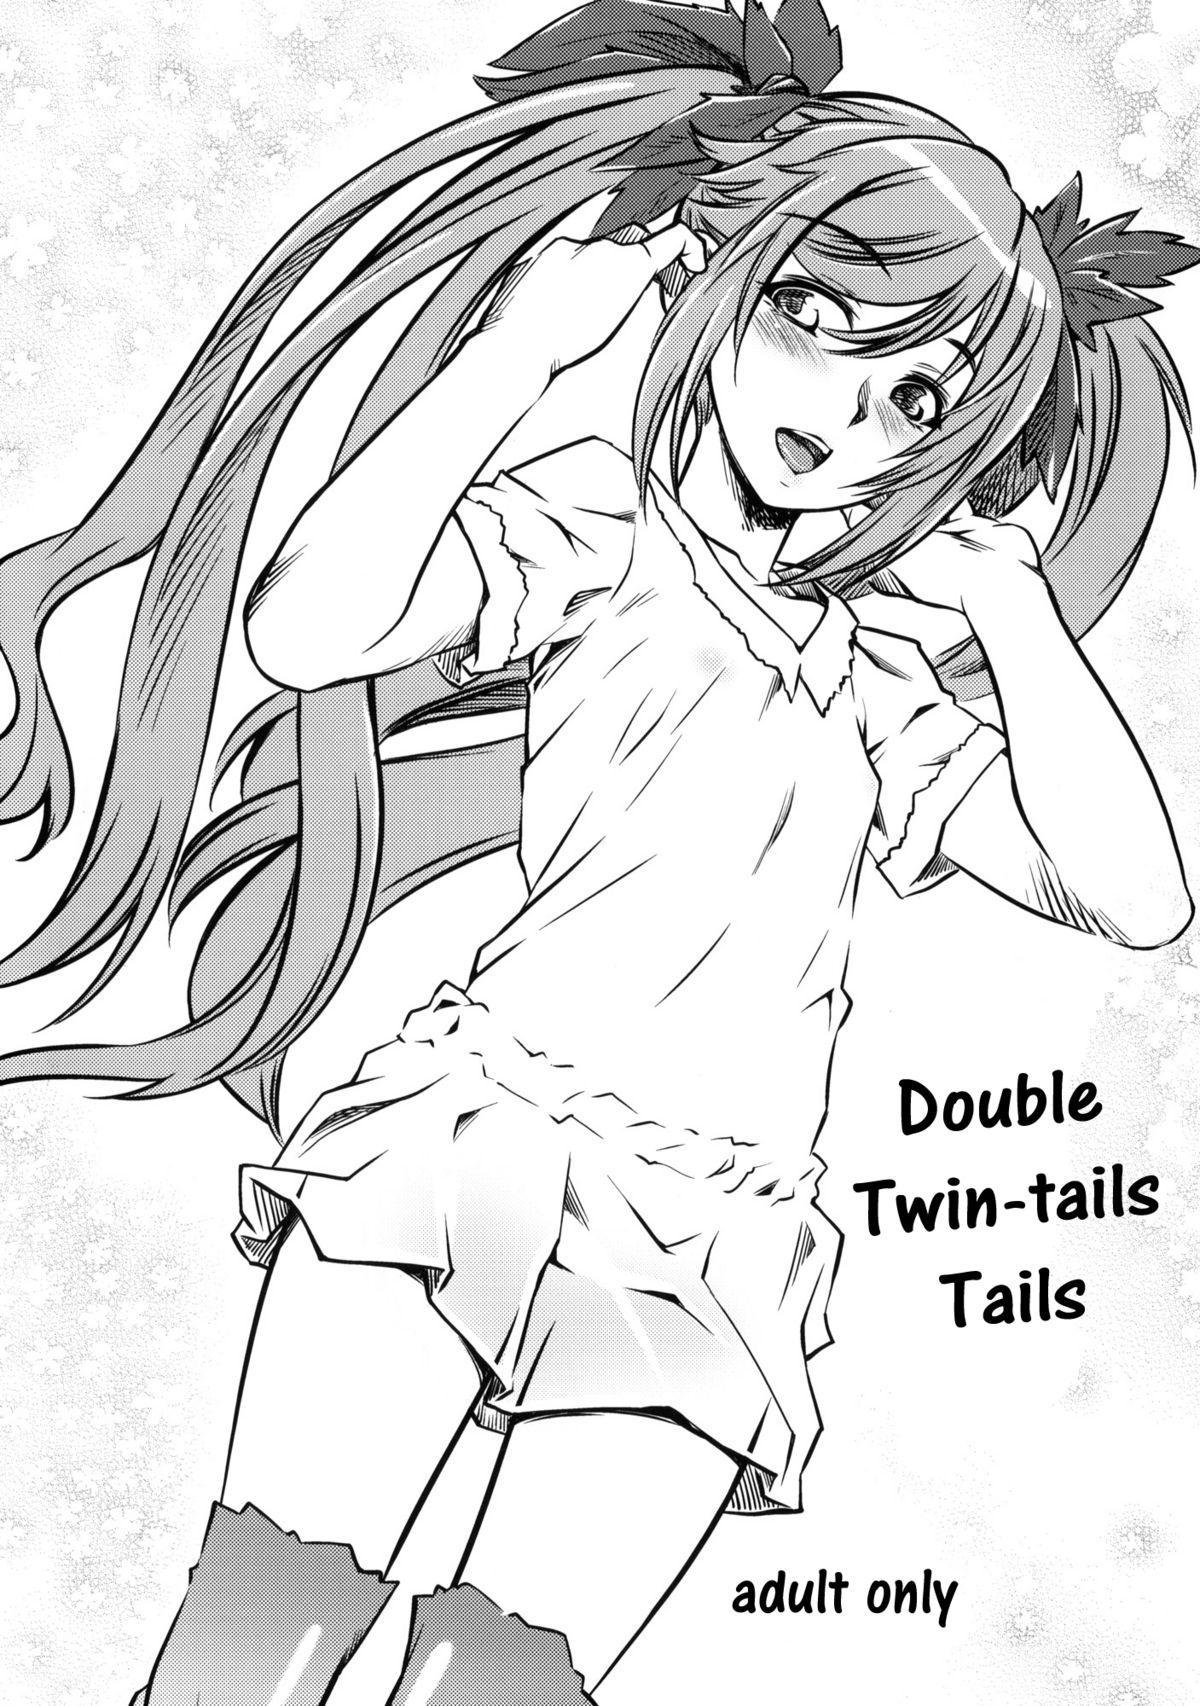 Dauble Twin Tail Shippo | Double Twin Tails Shippo 0